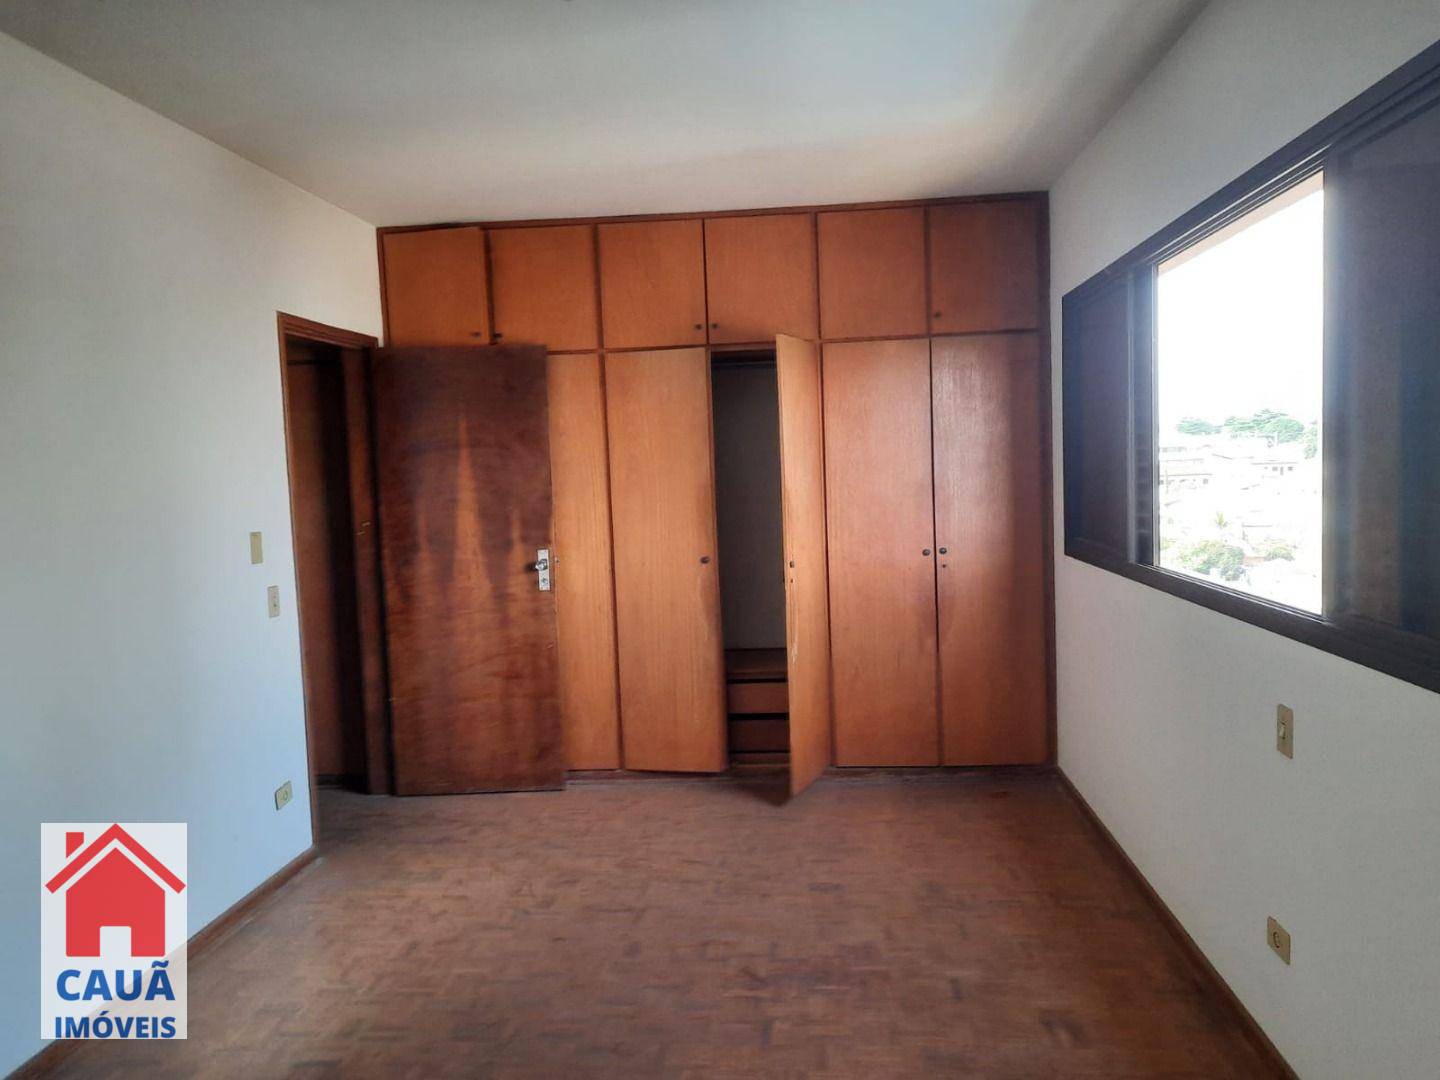 Apartamento, 4 quartos, 245 m² - Foto 2